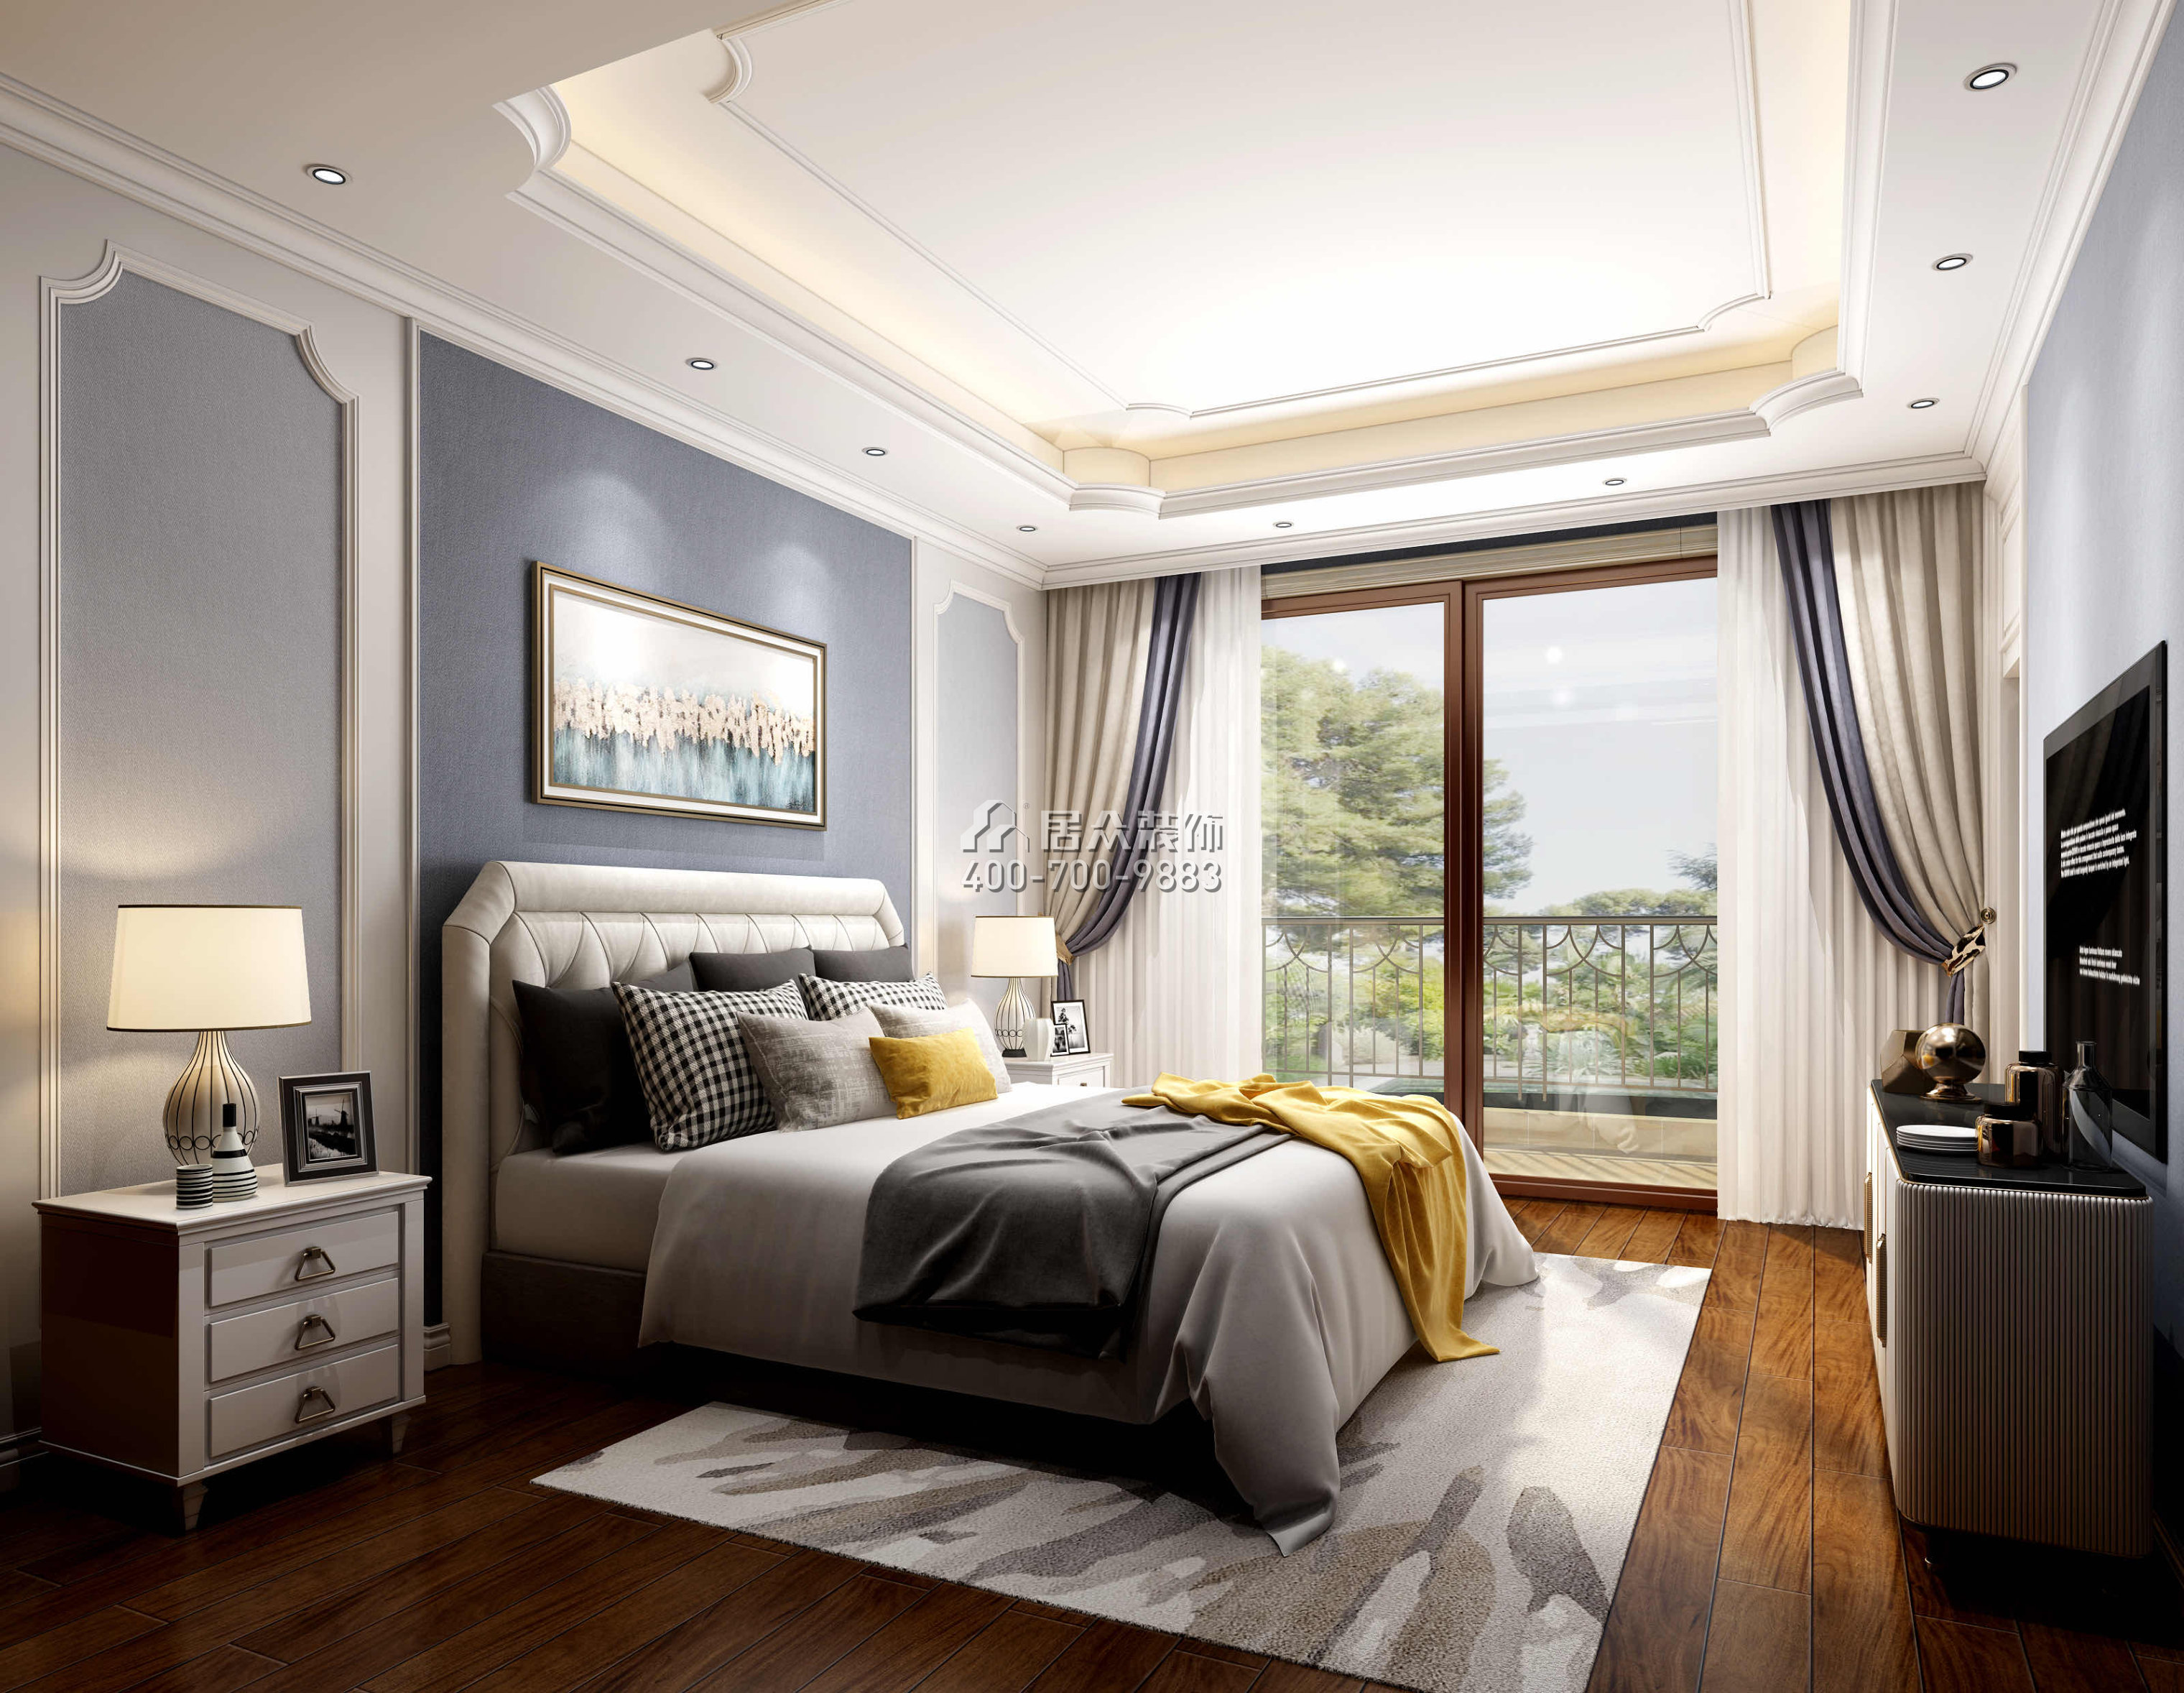 帝庭山500平方米歐式風格別墅戶型臥室裝修效果圖